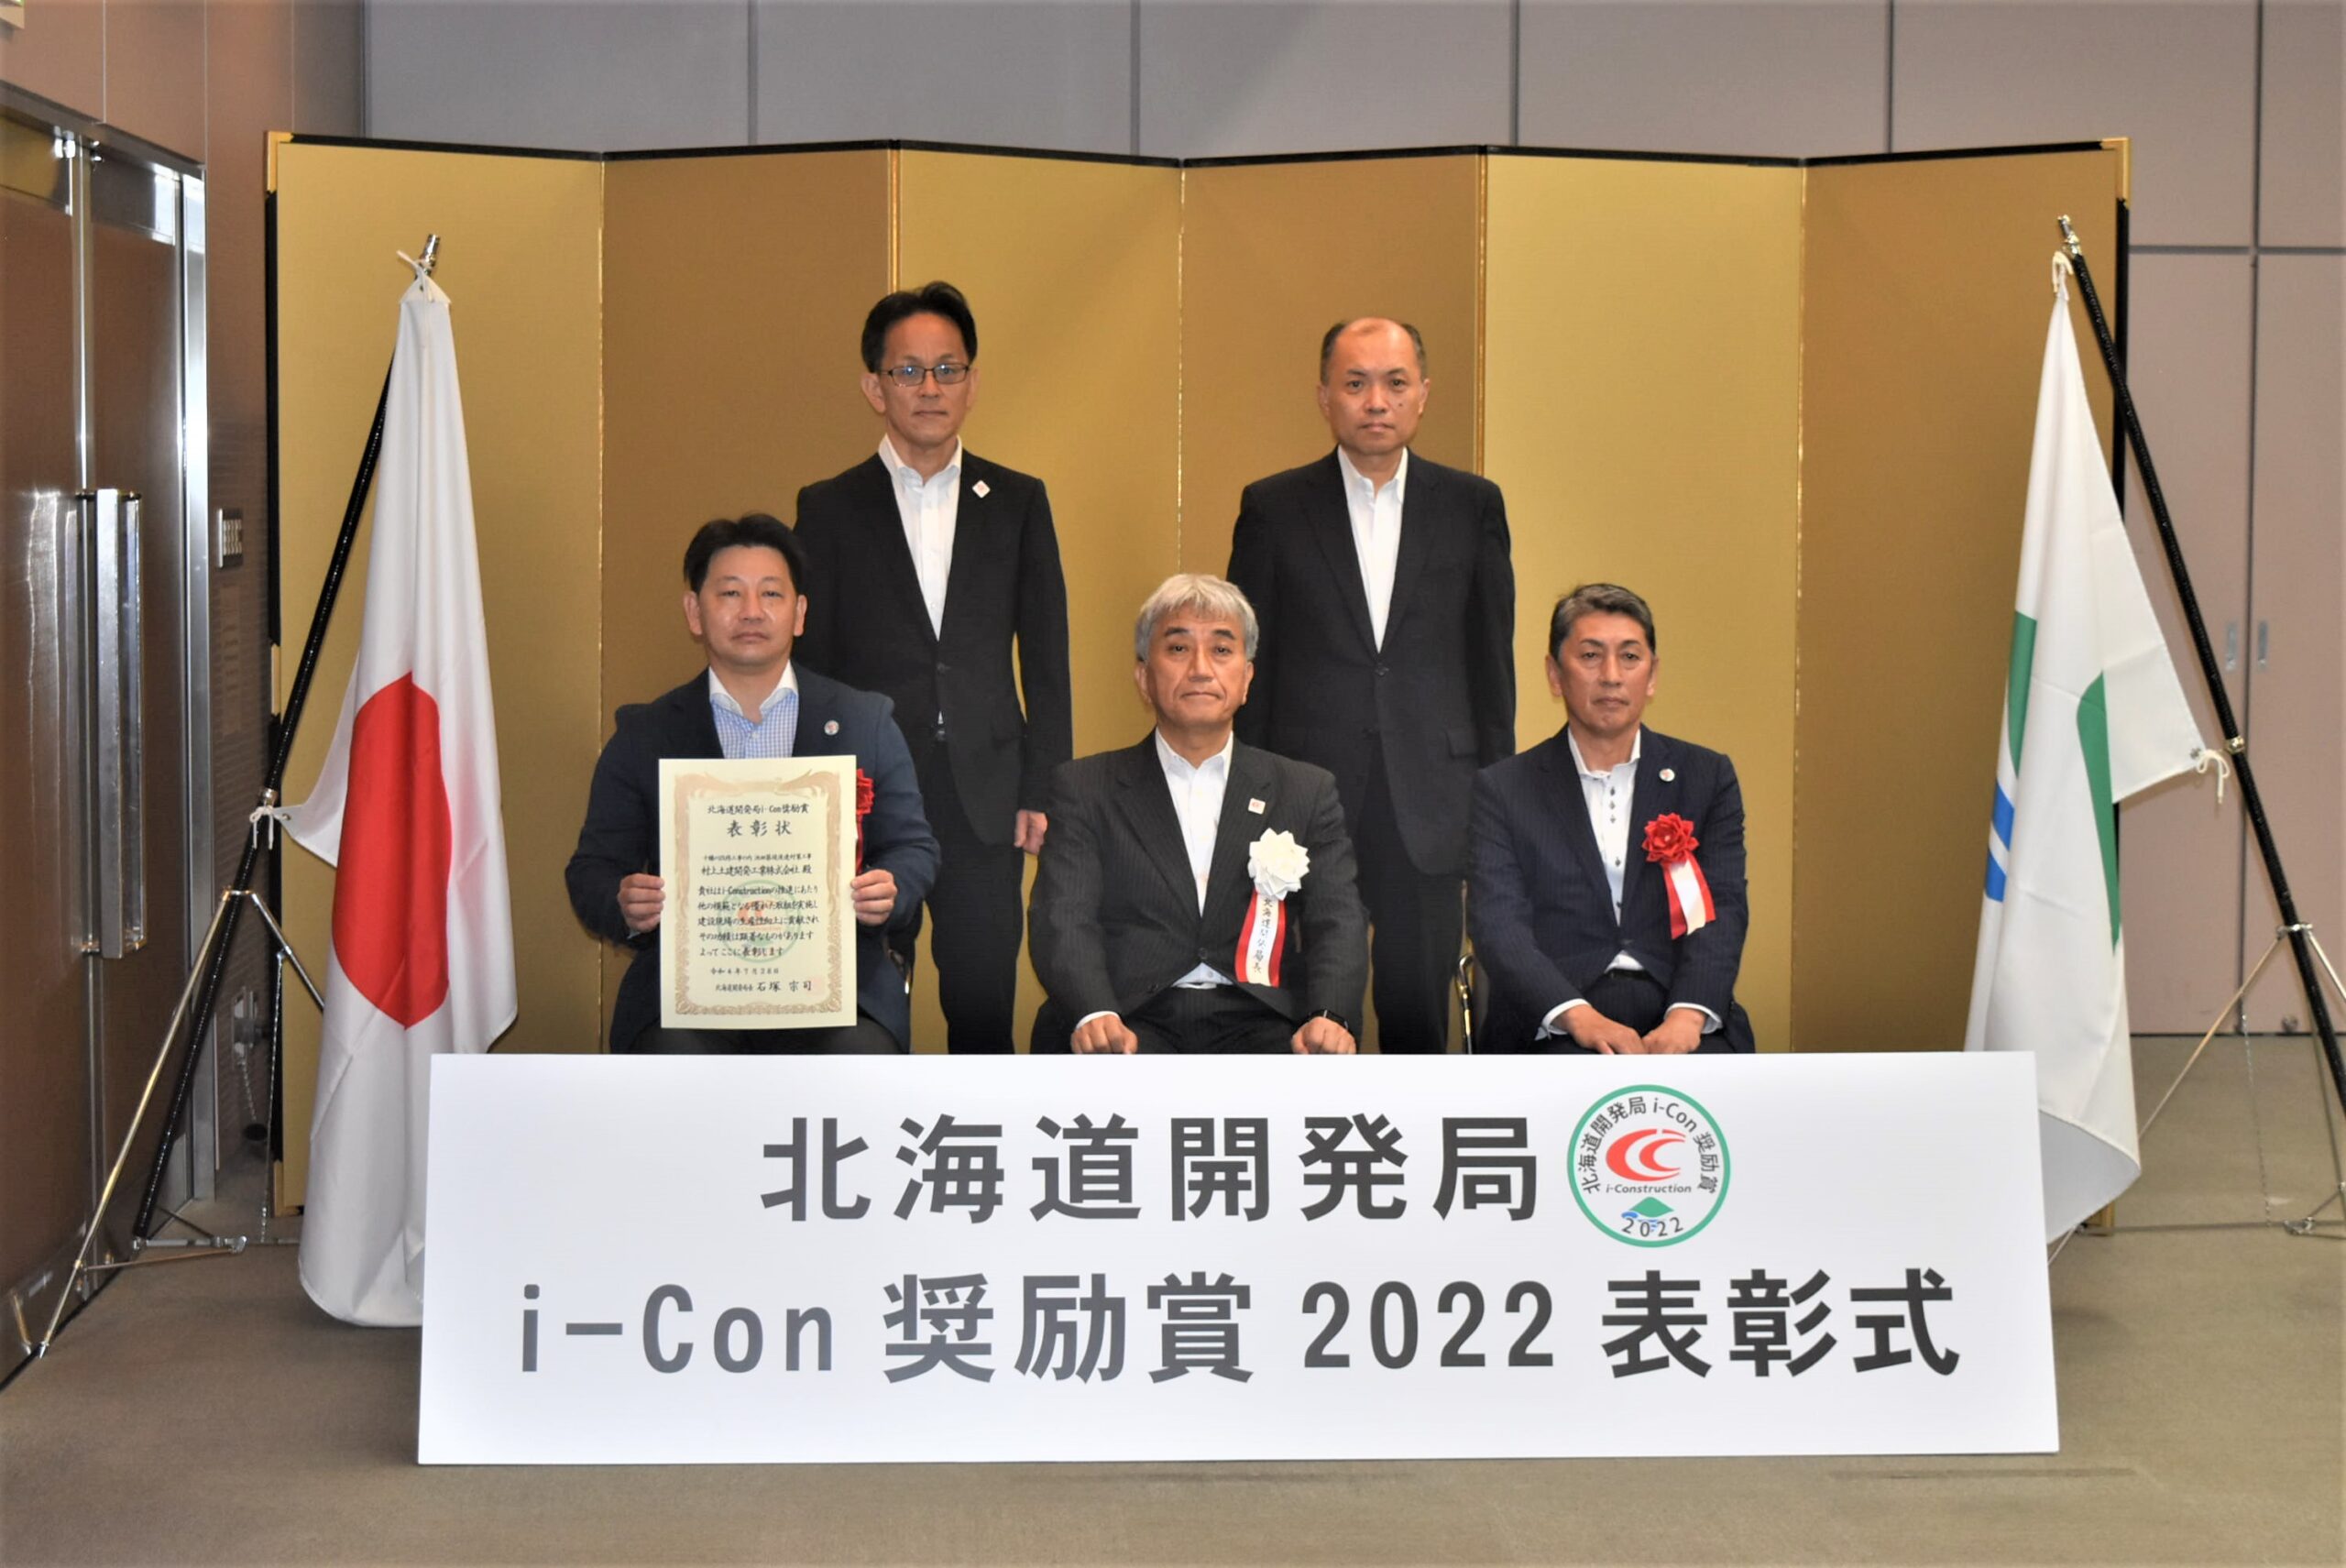 「北海道開発局i-Con 奨励賞2022」を受賞しました。